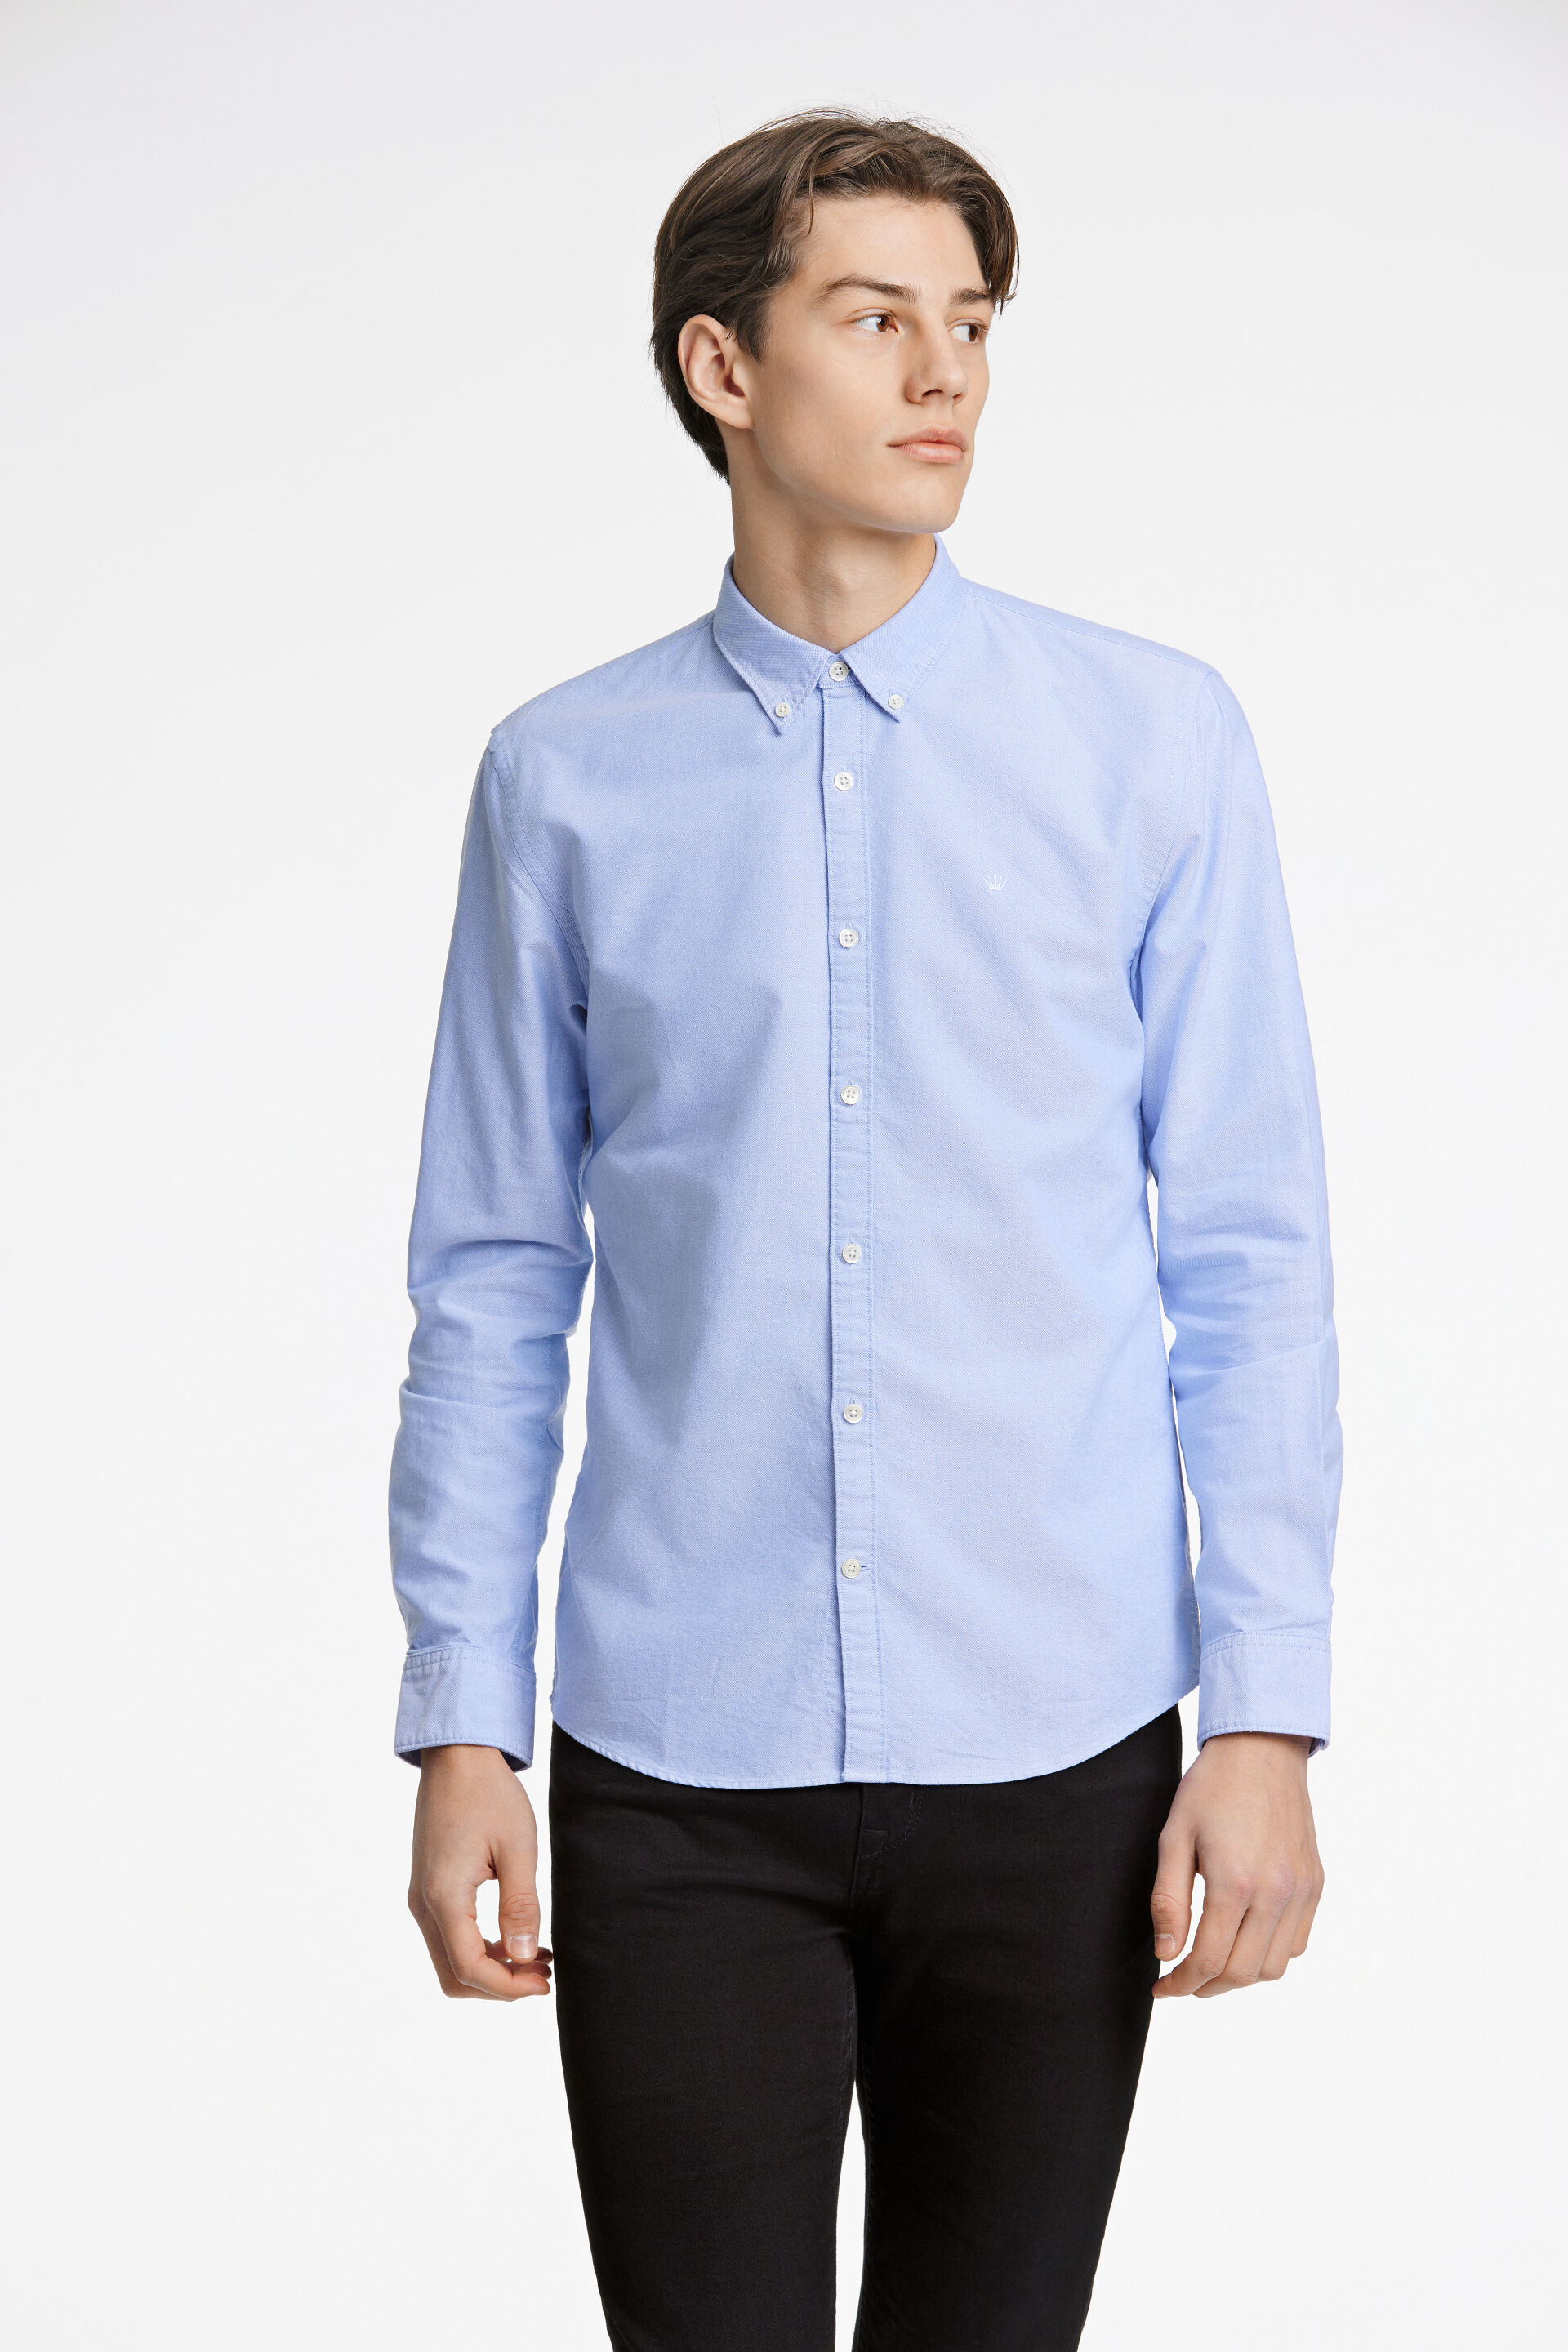 Junk de Luxe  Oxfordskjorta Blå 60-205020